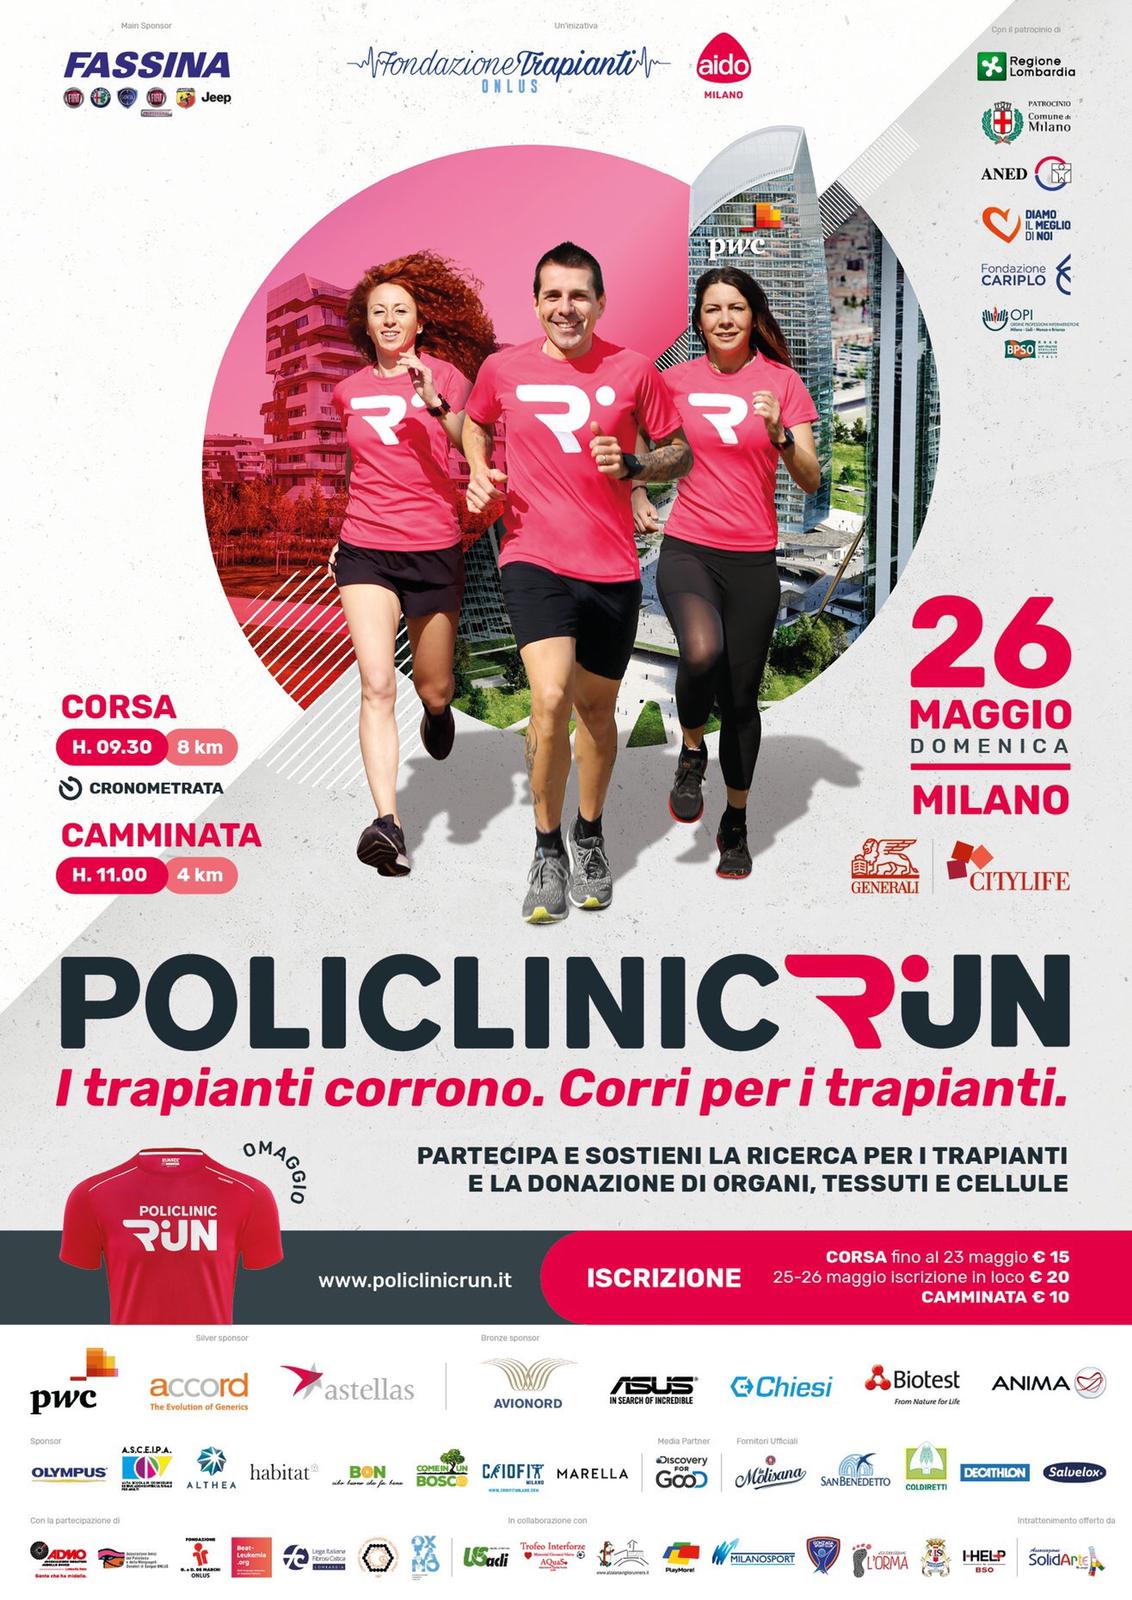 POLICLINIC RUN – 26 Maggio Milano – CIVES Varese e CIVES Milano presenti all’Evento